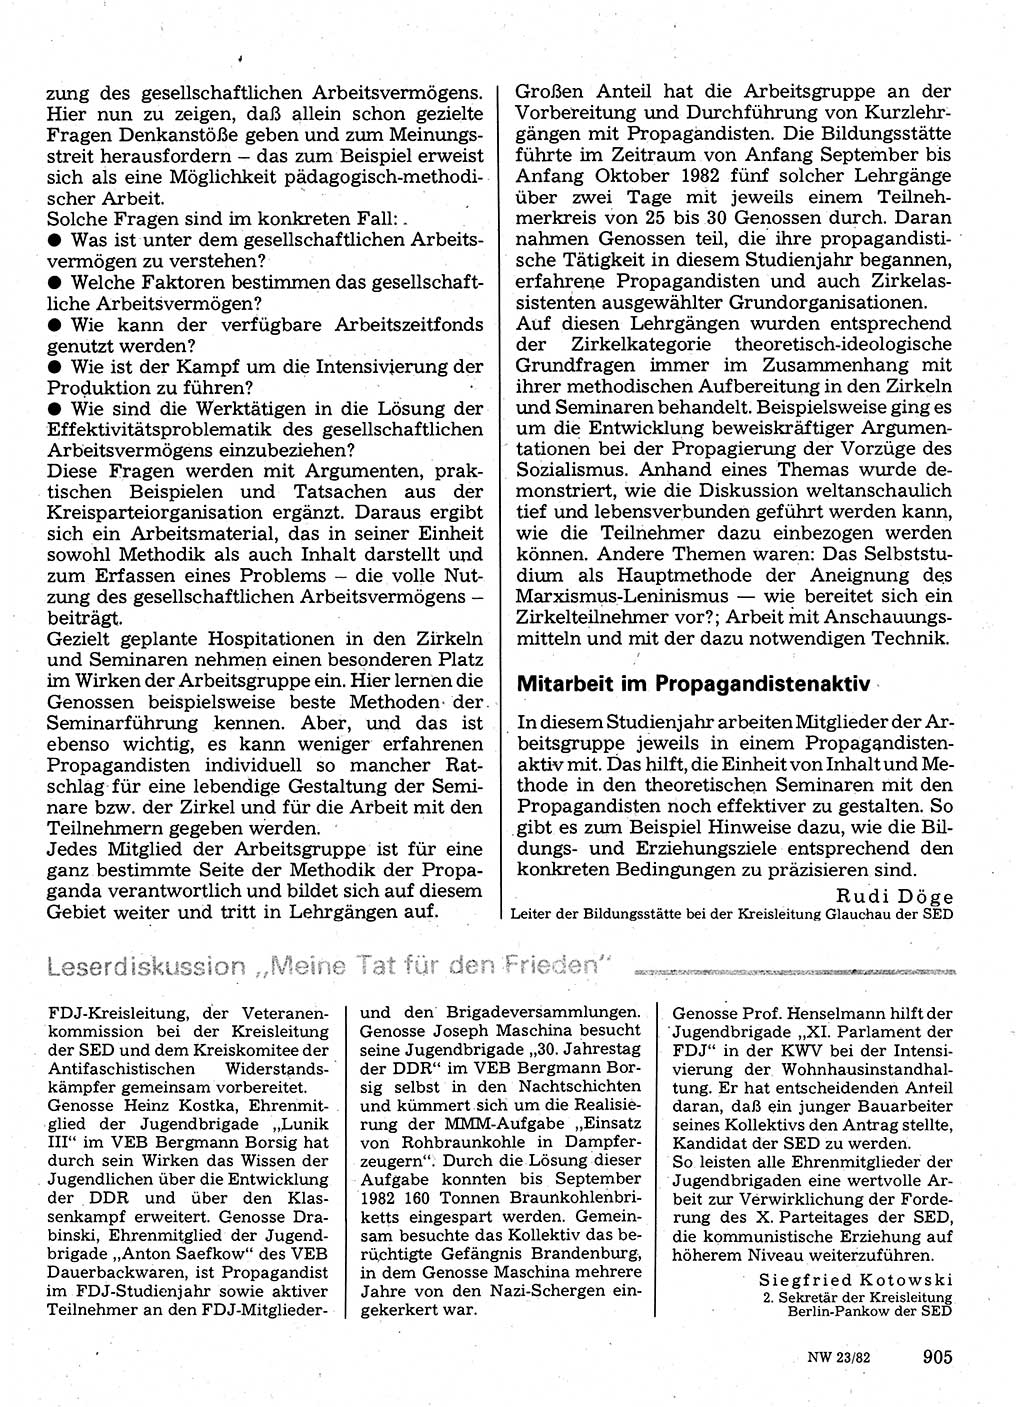 Neuer Weg (NW), Organ des Zentralkomitees (ZK) der SED (Sozialistische Einheitspartei Deutschlands) für Fragen des Parteilebens, 37. Jahrgang [Deutsche Demokratische Republik (DDR)] 1982, Seite 905 (NW ZK SED DDR 1982, S. 905)